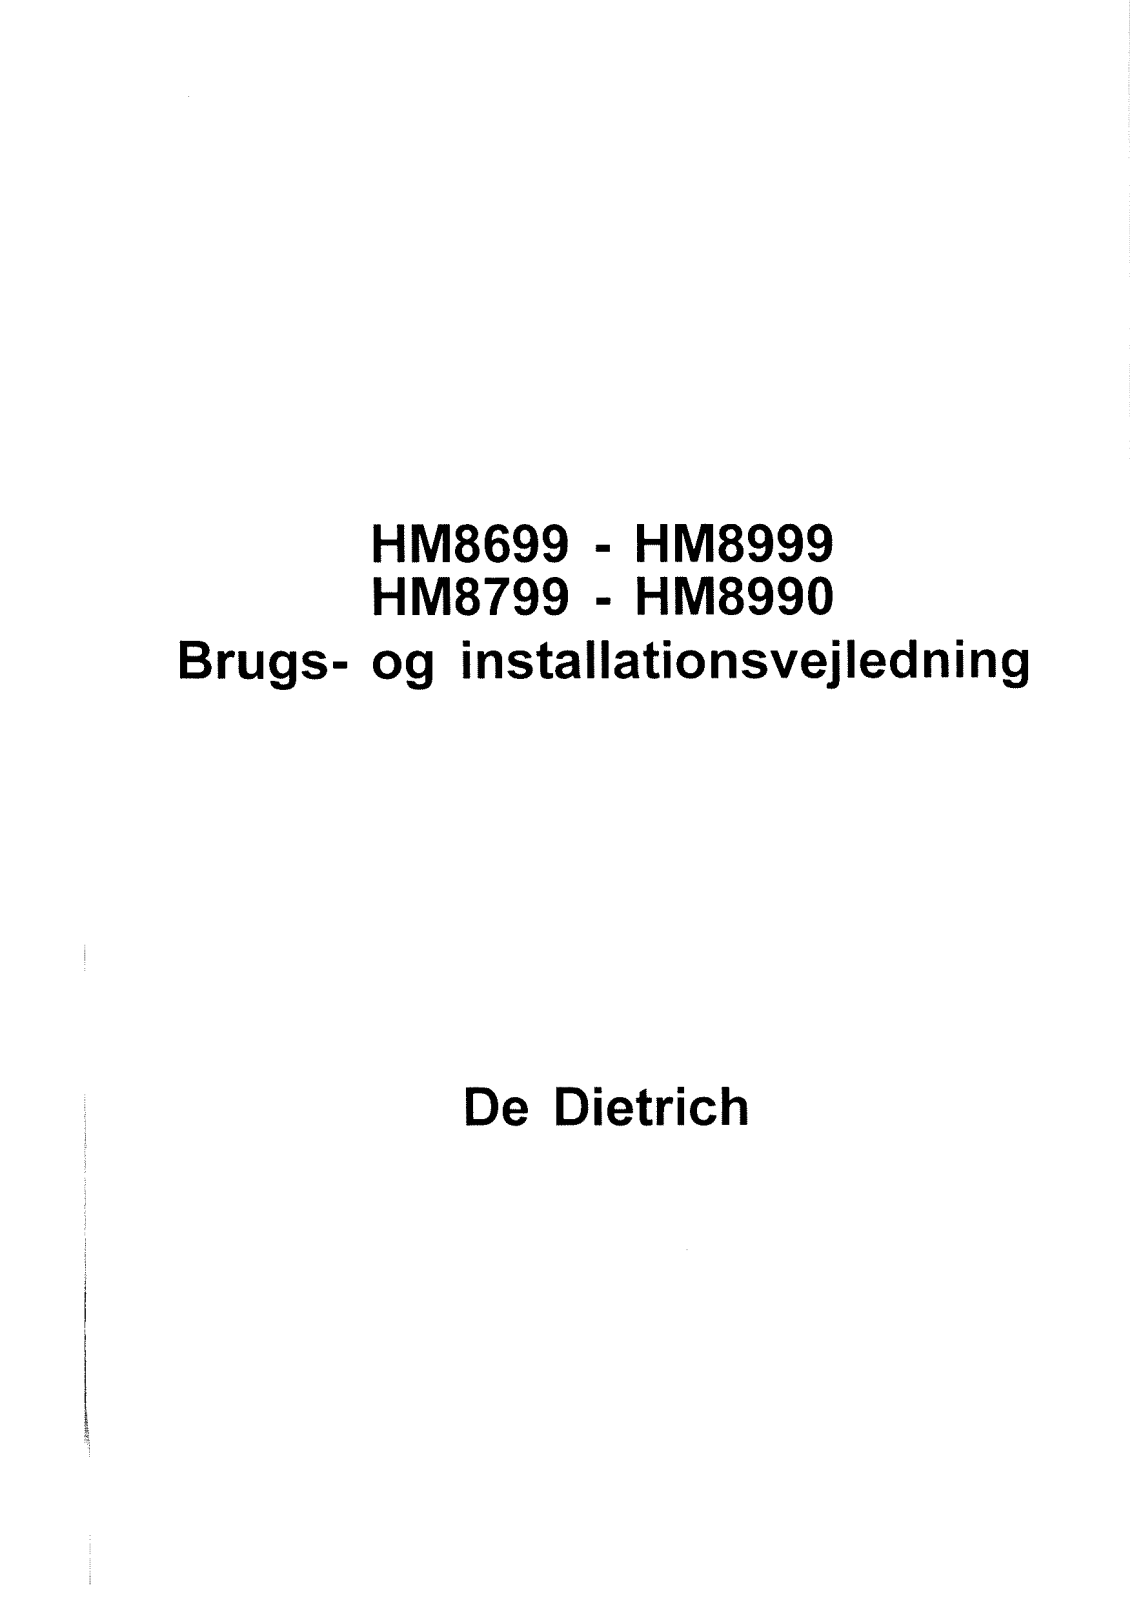 De dietrich hm8699, hm 8799, hm8990 User Manual